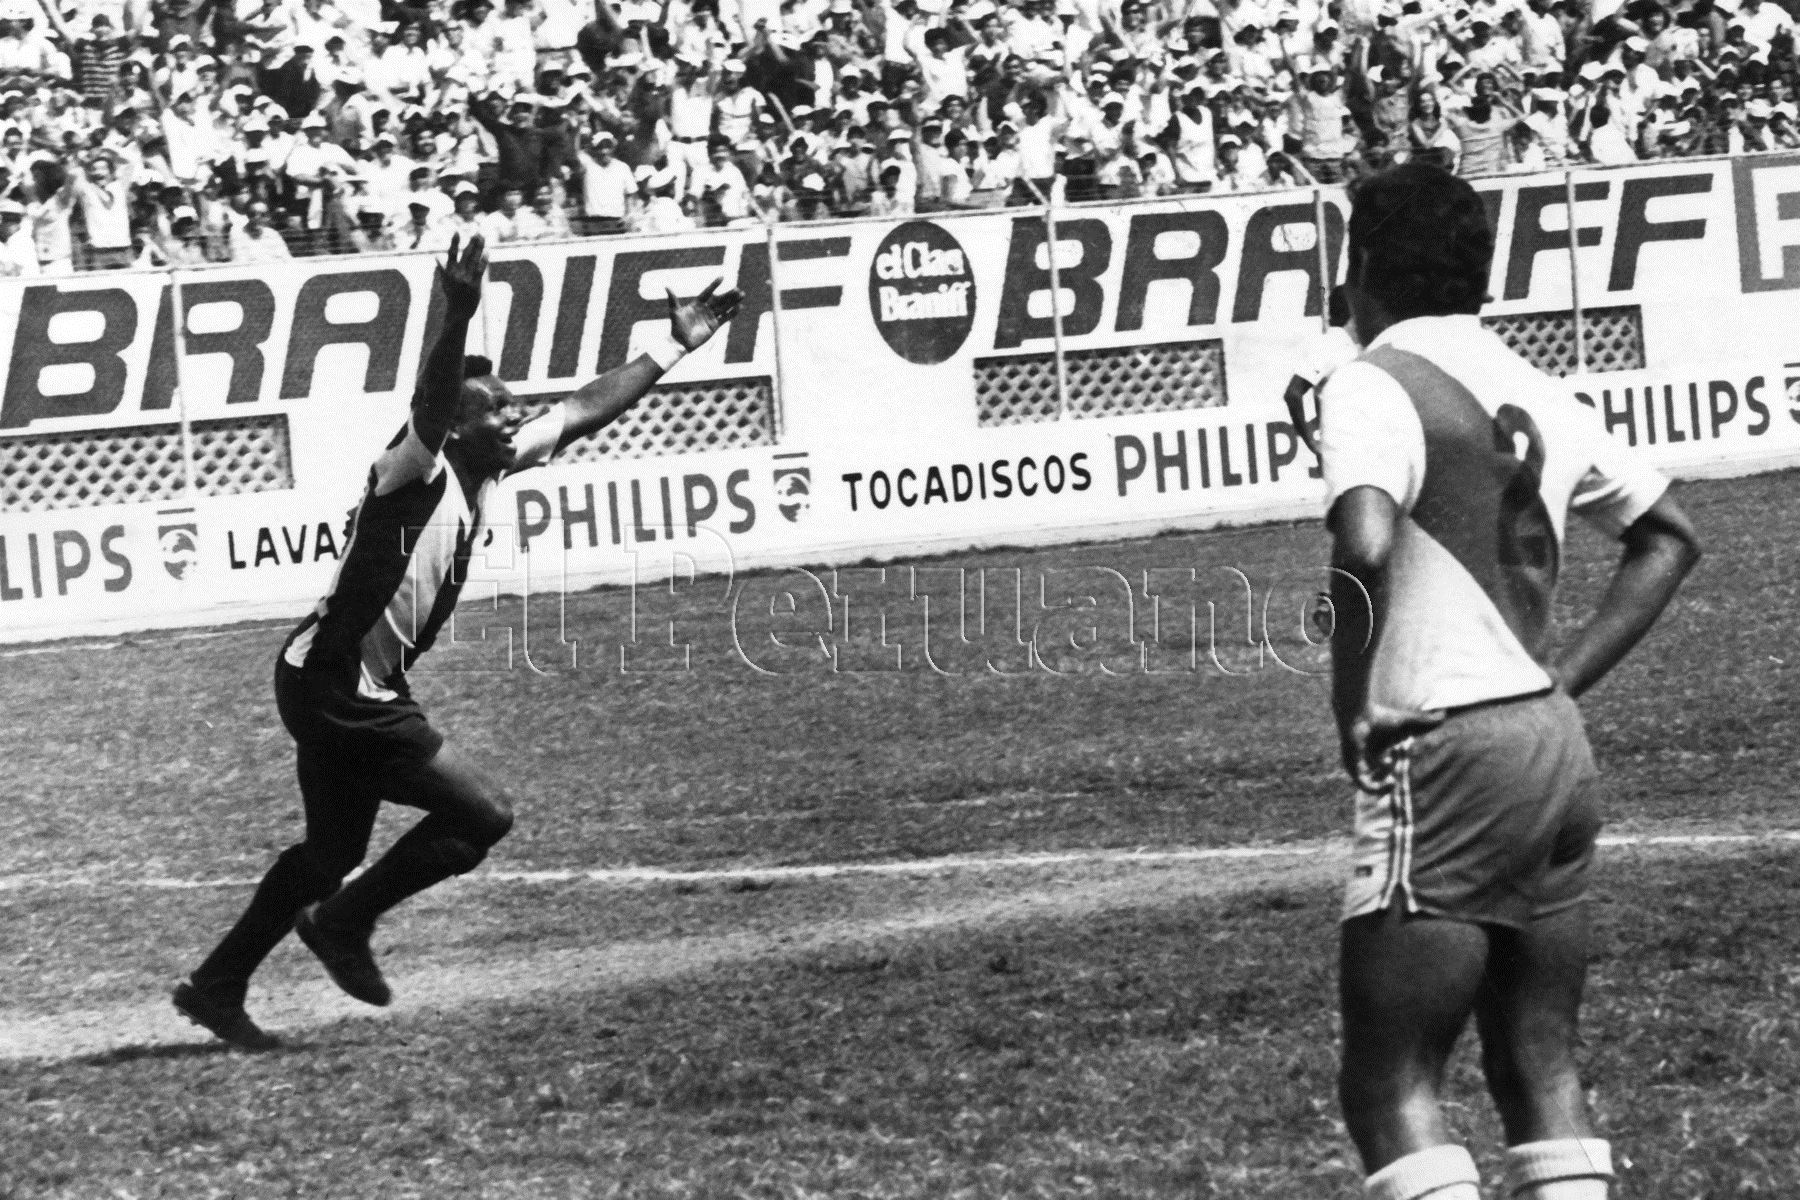 La tarde que hizo recordar al "Tanque de Casma". Perico León anotó los dos goles con los que Alianza Lima derrotó al Deportivo Municipal (16 diciembre 1973).Foto:Archivo Histórico El Peruano